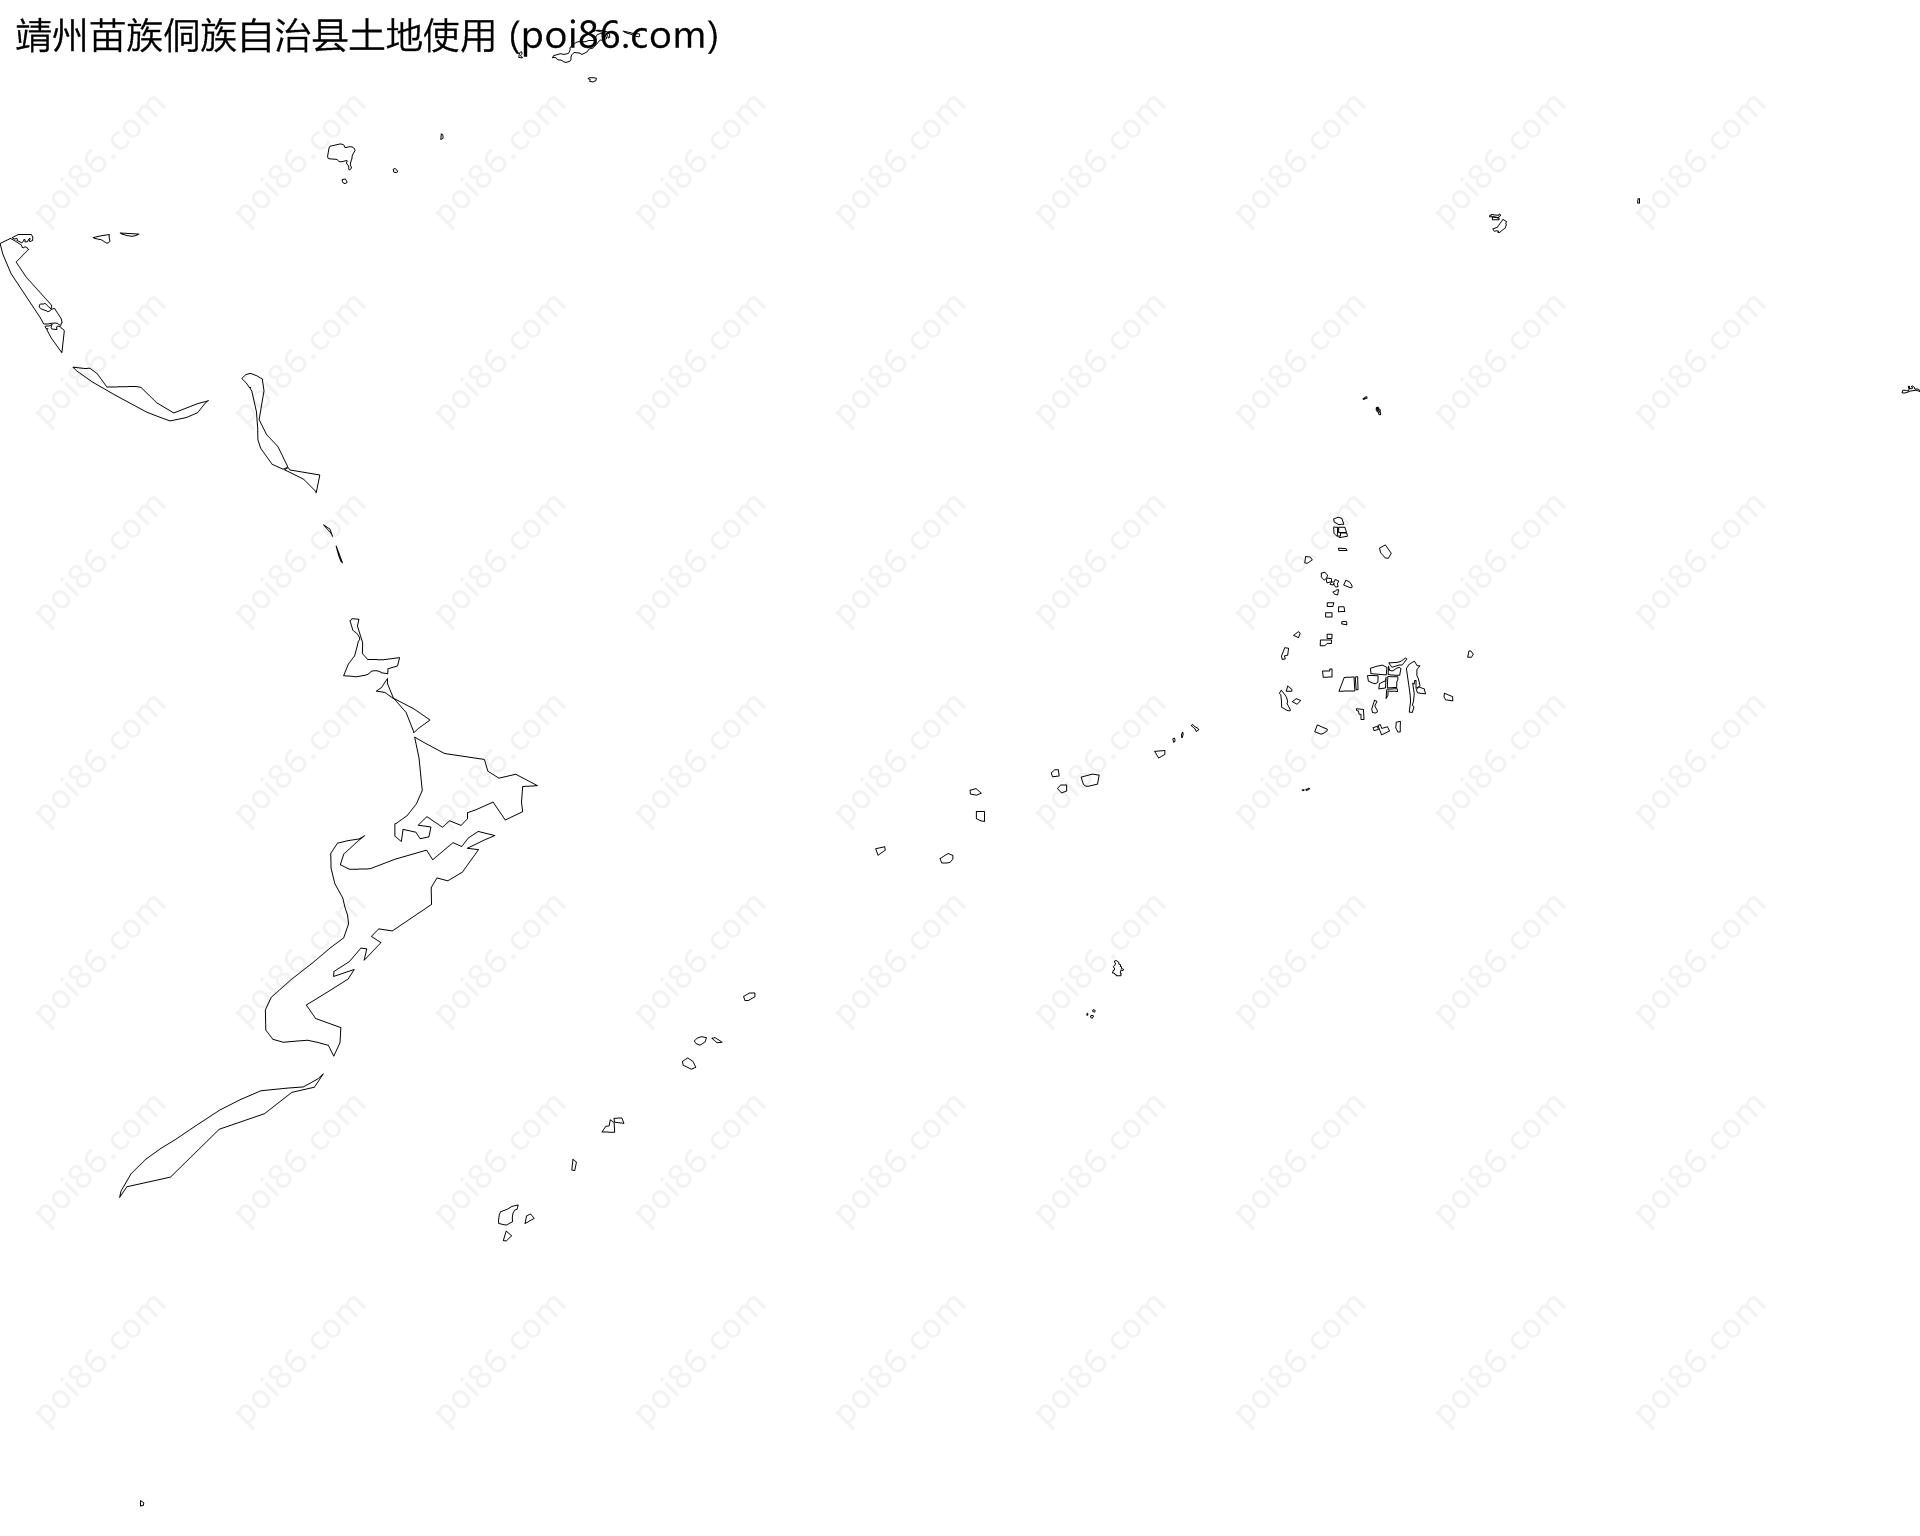 靖州苗族侗族自治县土地使用地图